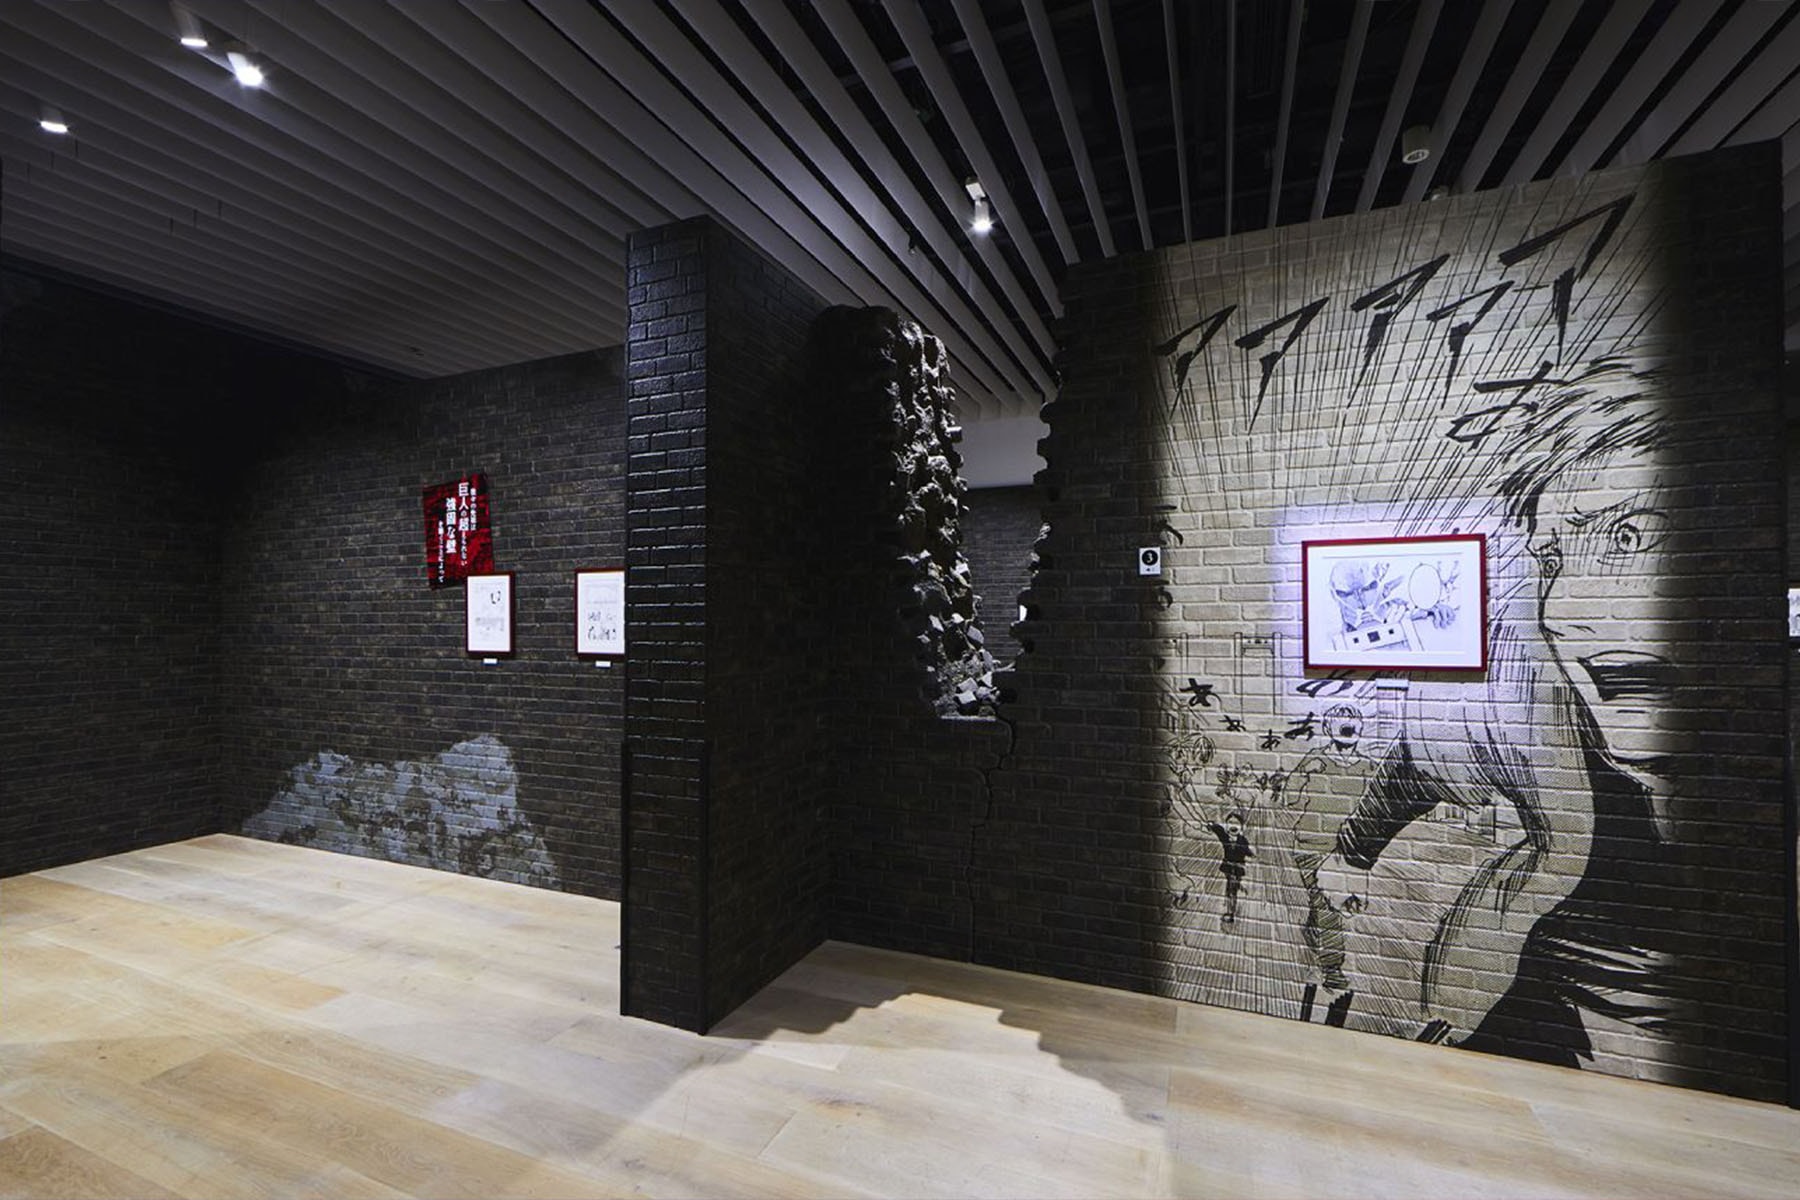 《進擊的巨人 Attack On Titan: The Exhibition》展覽即將登陸新加坡藝術科學博物館